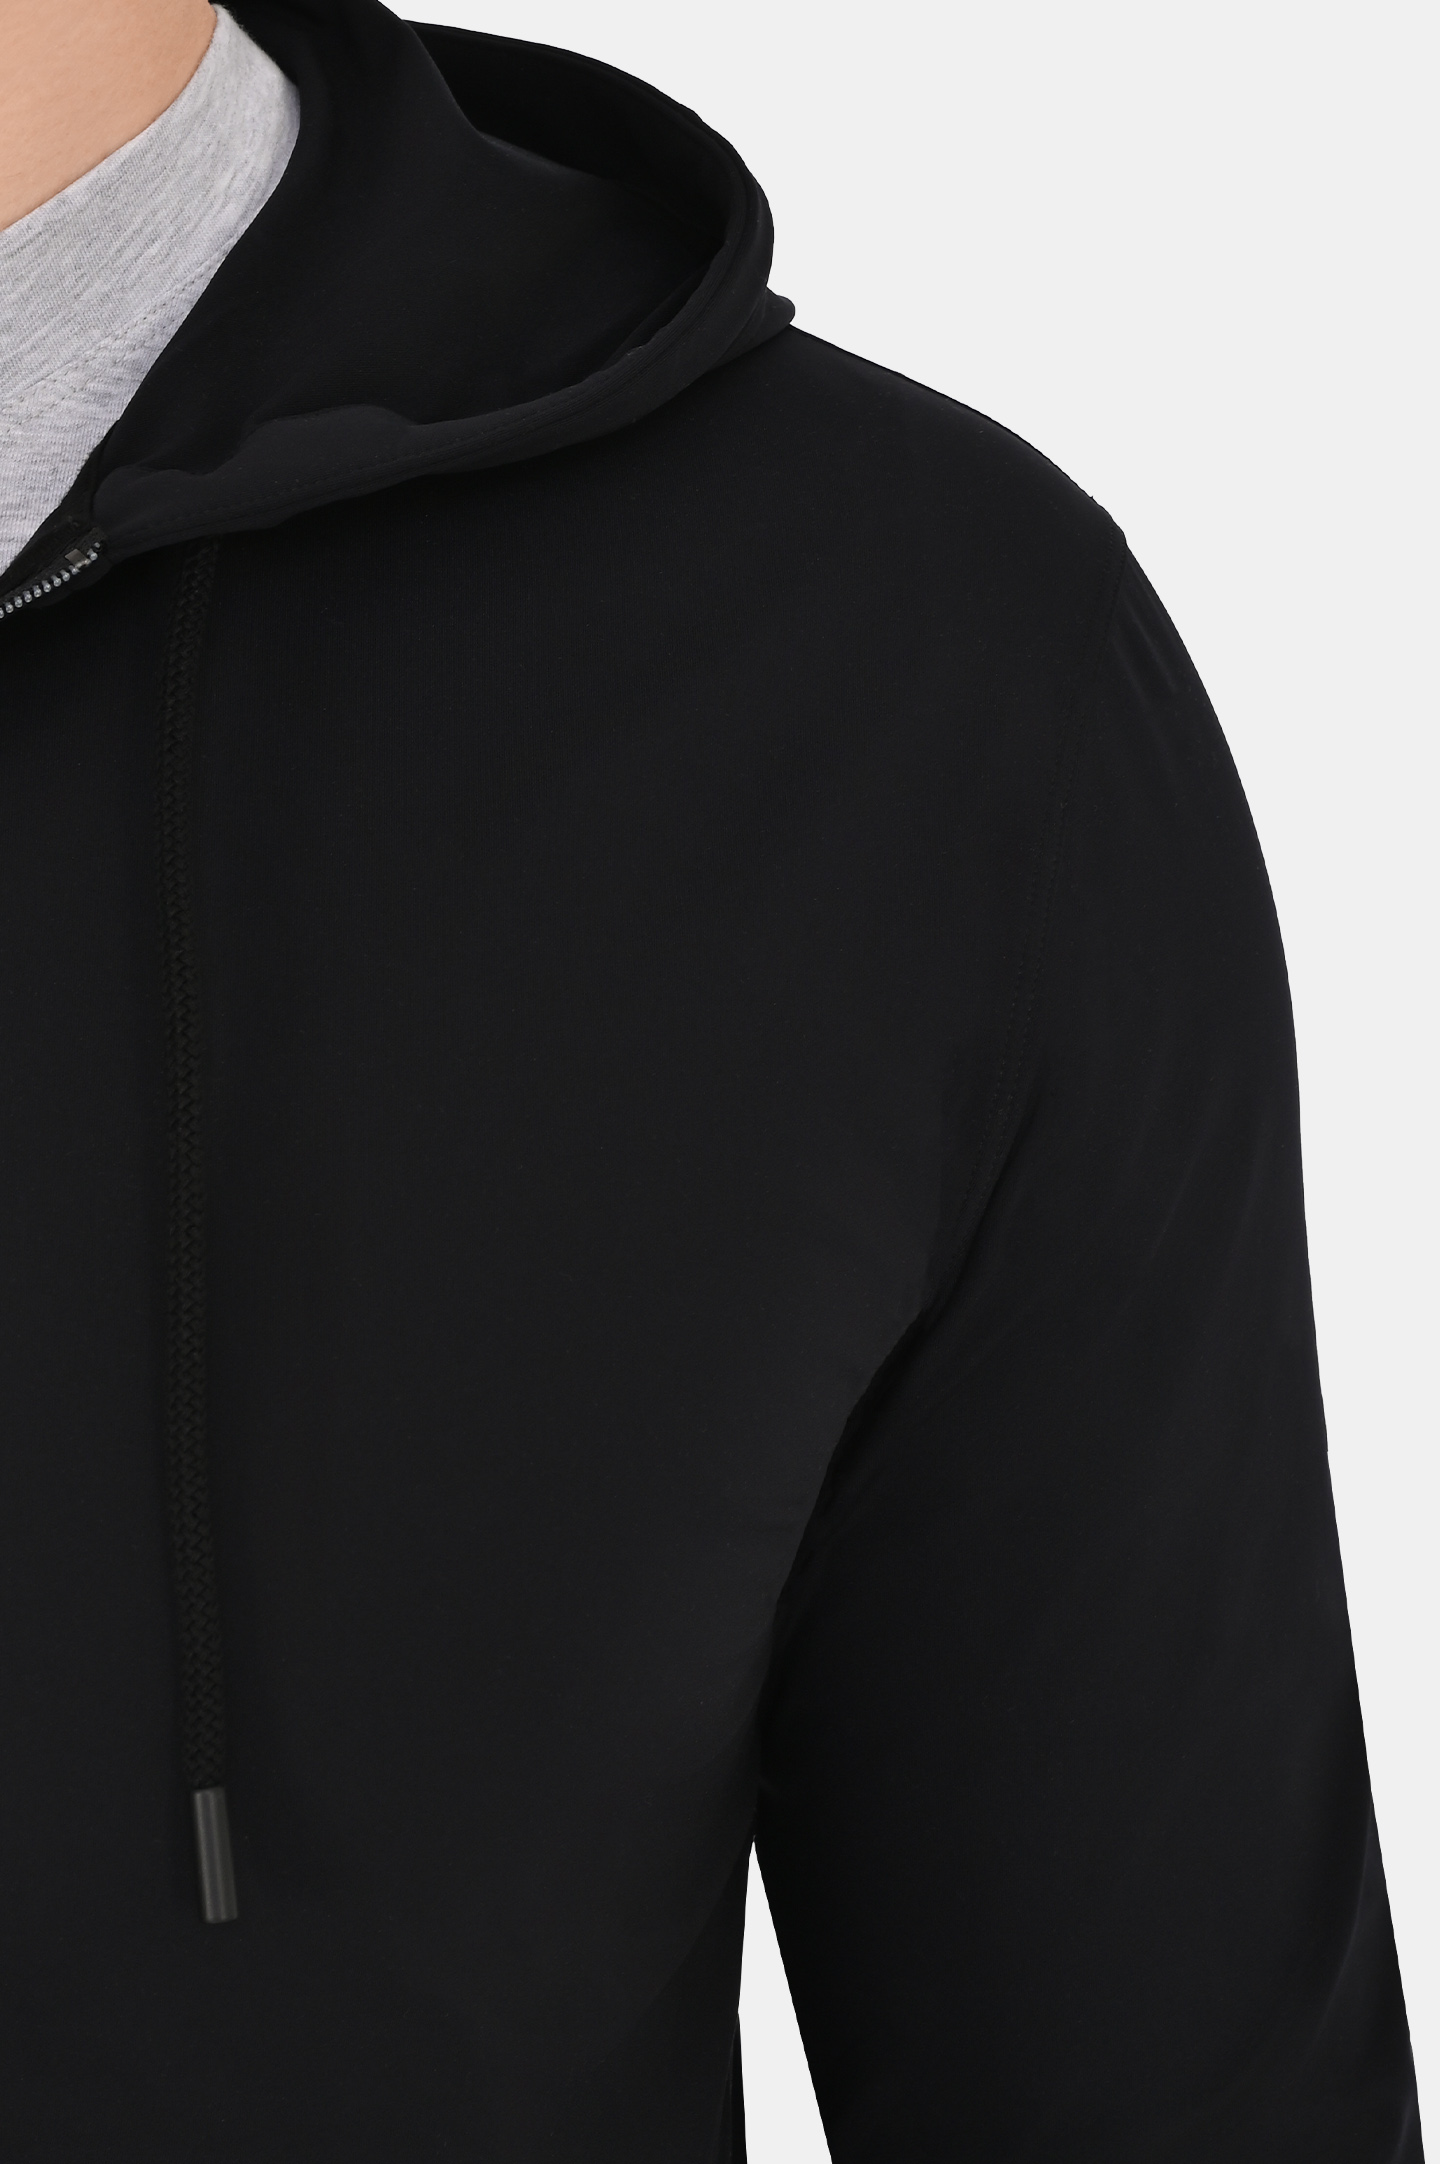 Куртка спорт KITON UMM048706, цвет: Черный, Мужской